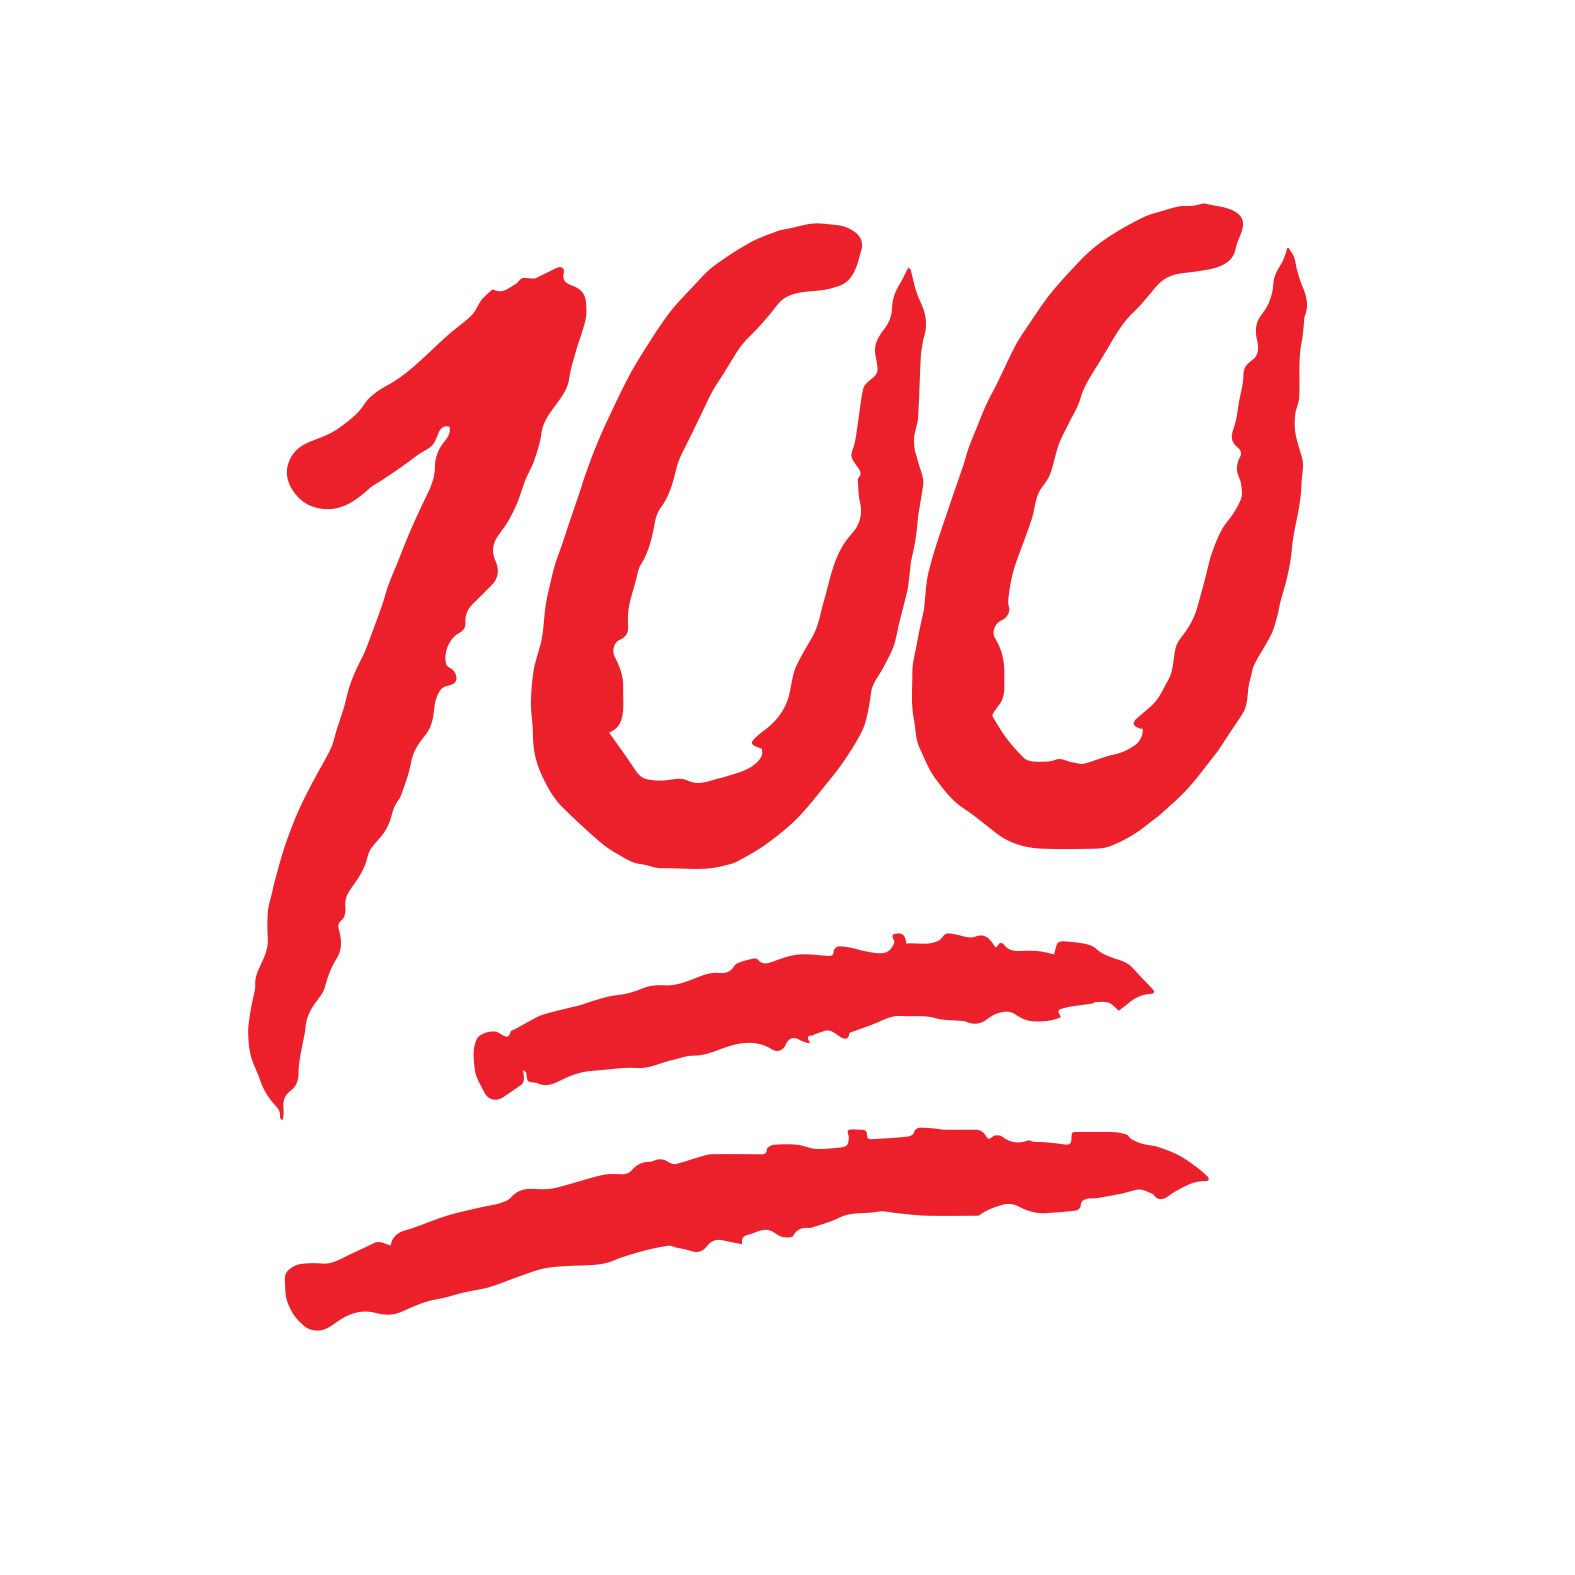 Résultat de recherche d'images pour "100 emoji"